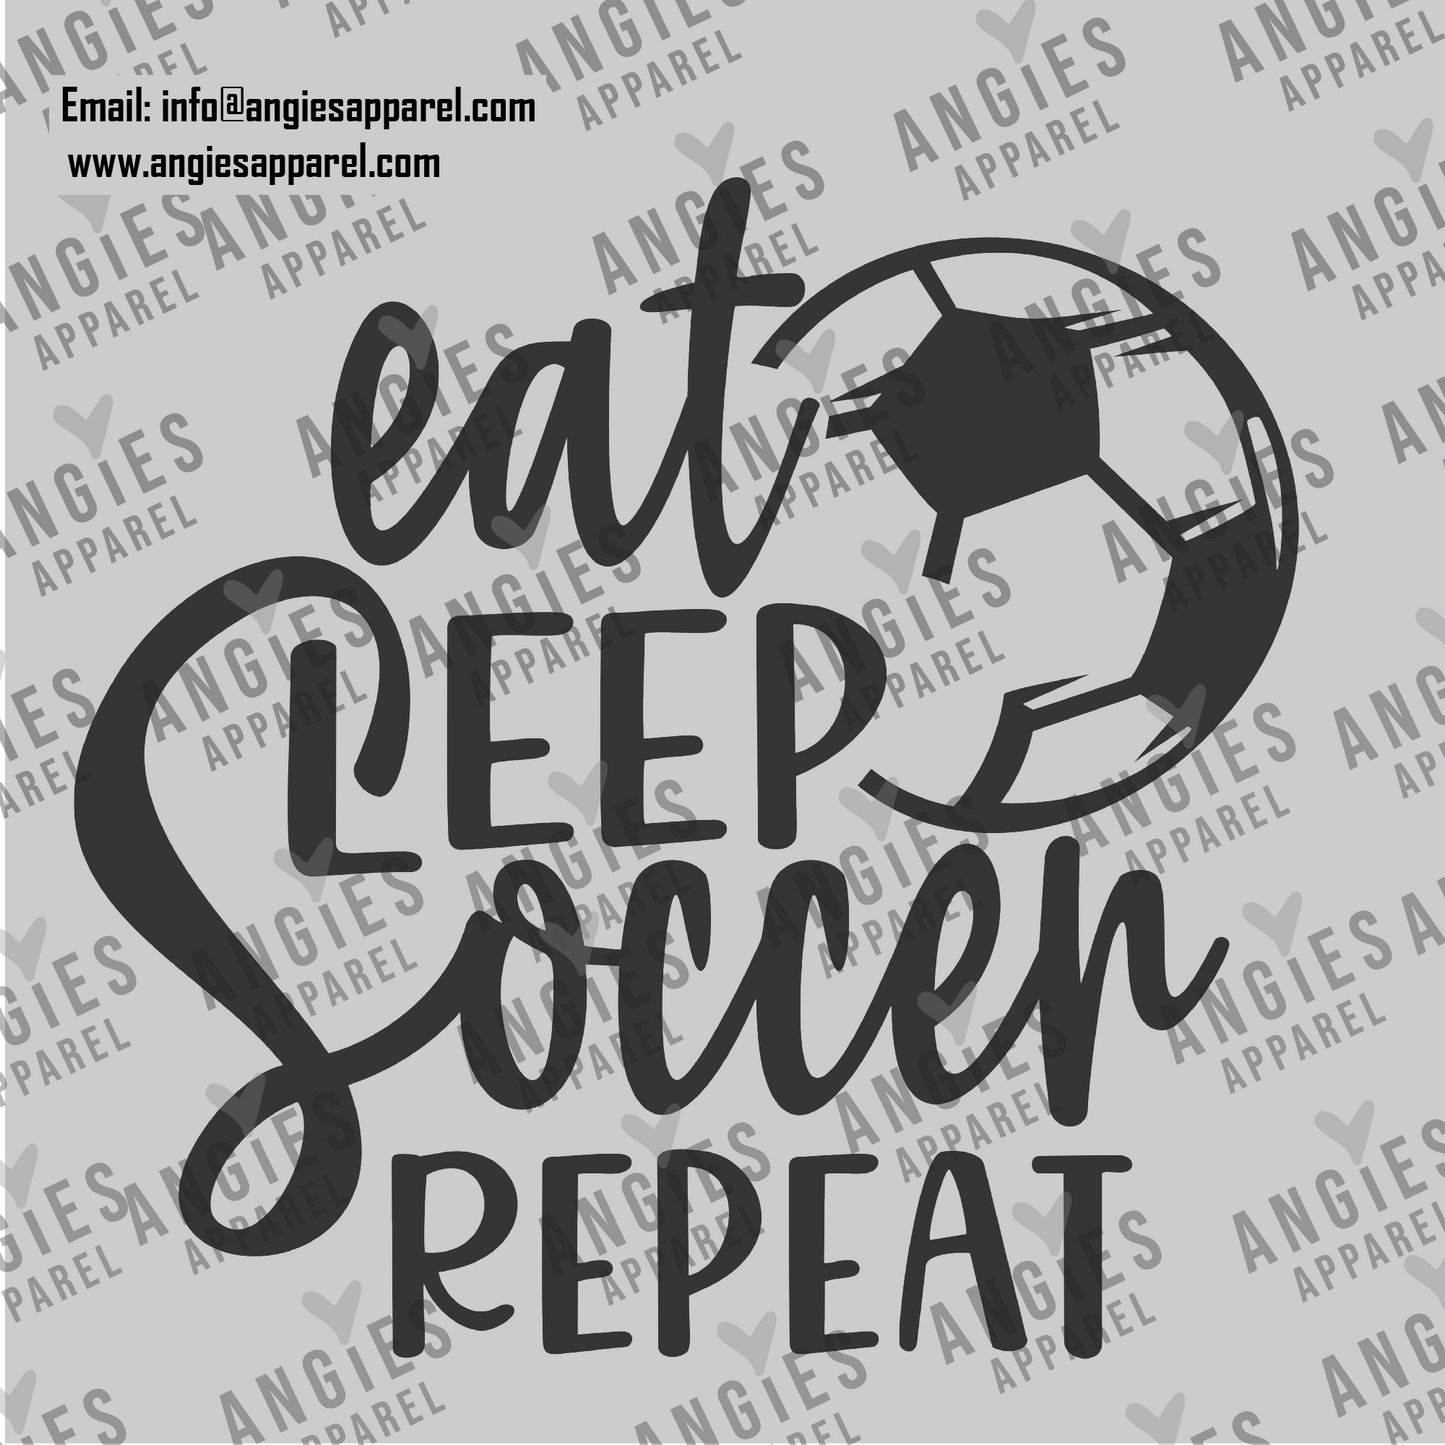 4. Eat Sleep Soccer 1